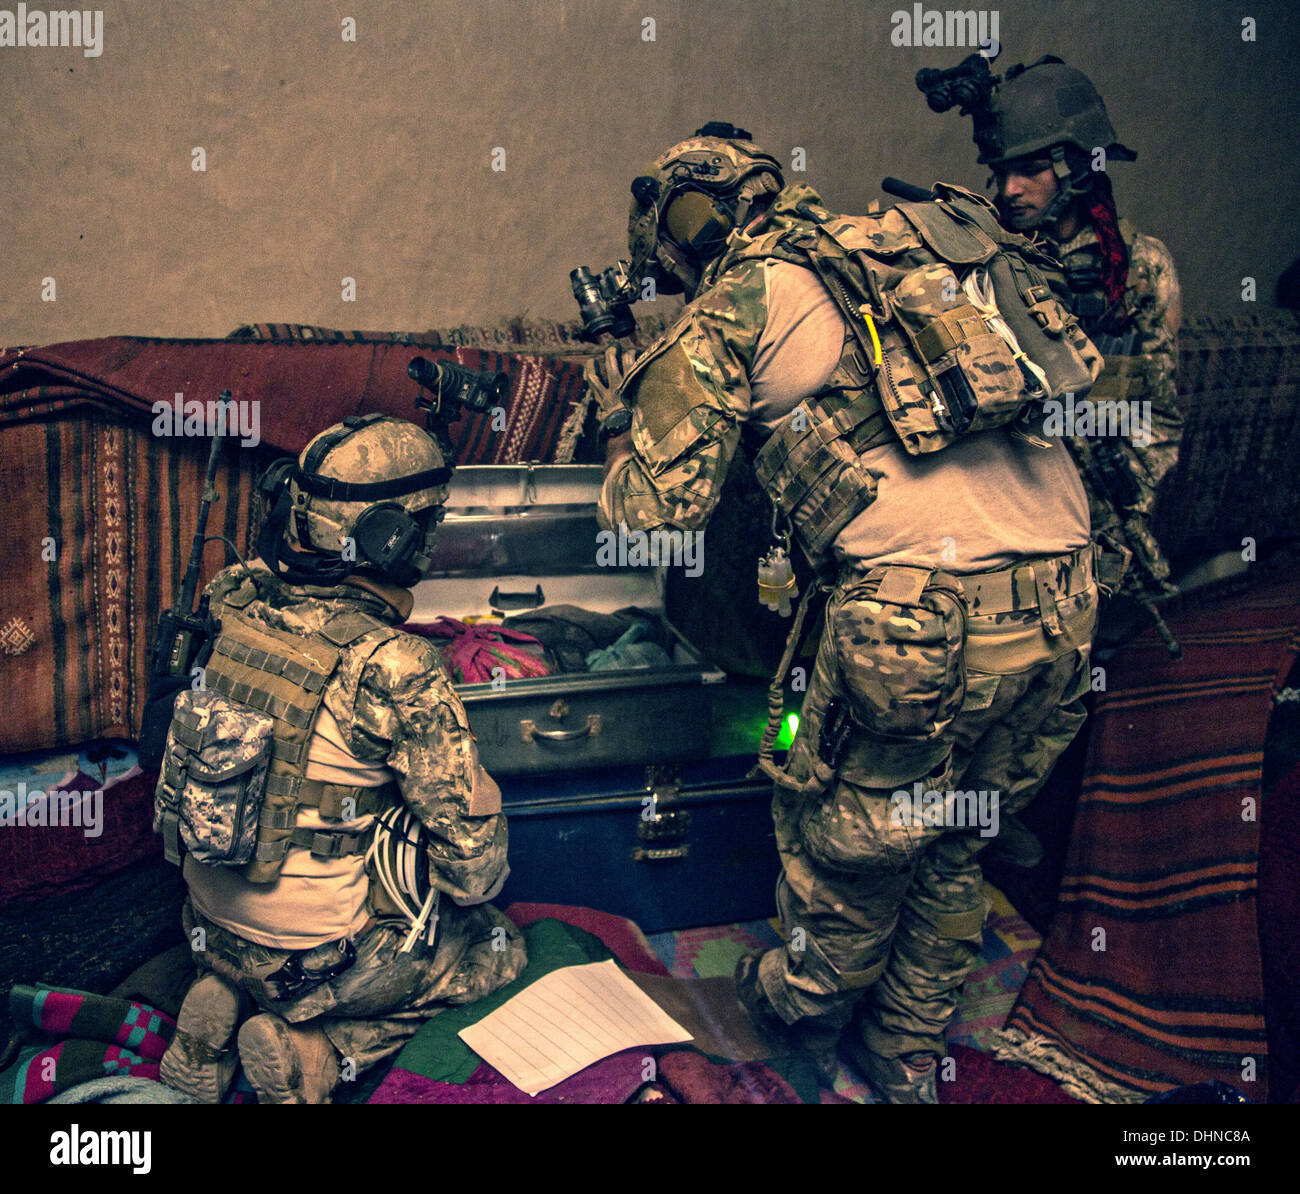 Afghanische und US-Soldaten suchen einen Raum für Beweise während einer nächtlichen Operation 14. Oktober 2013 in der Provinz Helmand, Afghanistan, 14. Oktober 2013. Afghanische und Koalition Truppen verhaftet ein Taliban improvisierten Sprengkörpern Zelle Führer während des Betriebs. Stockfoto